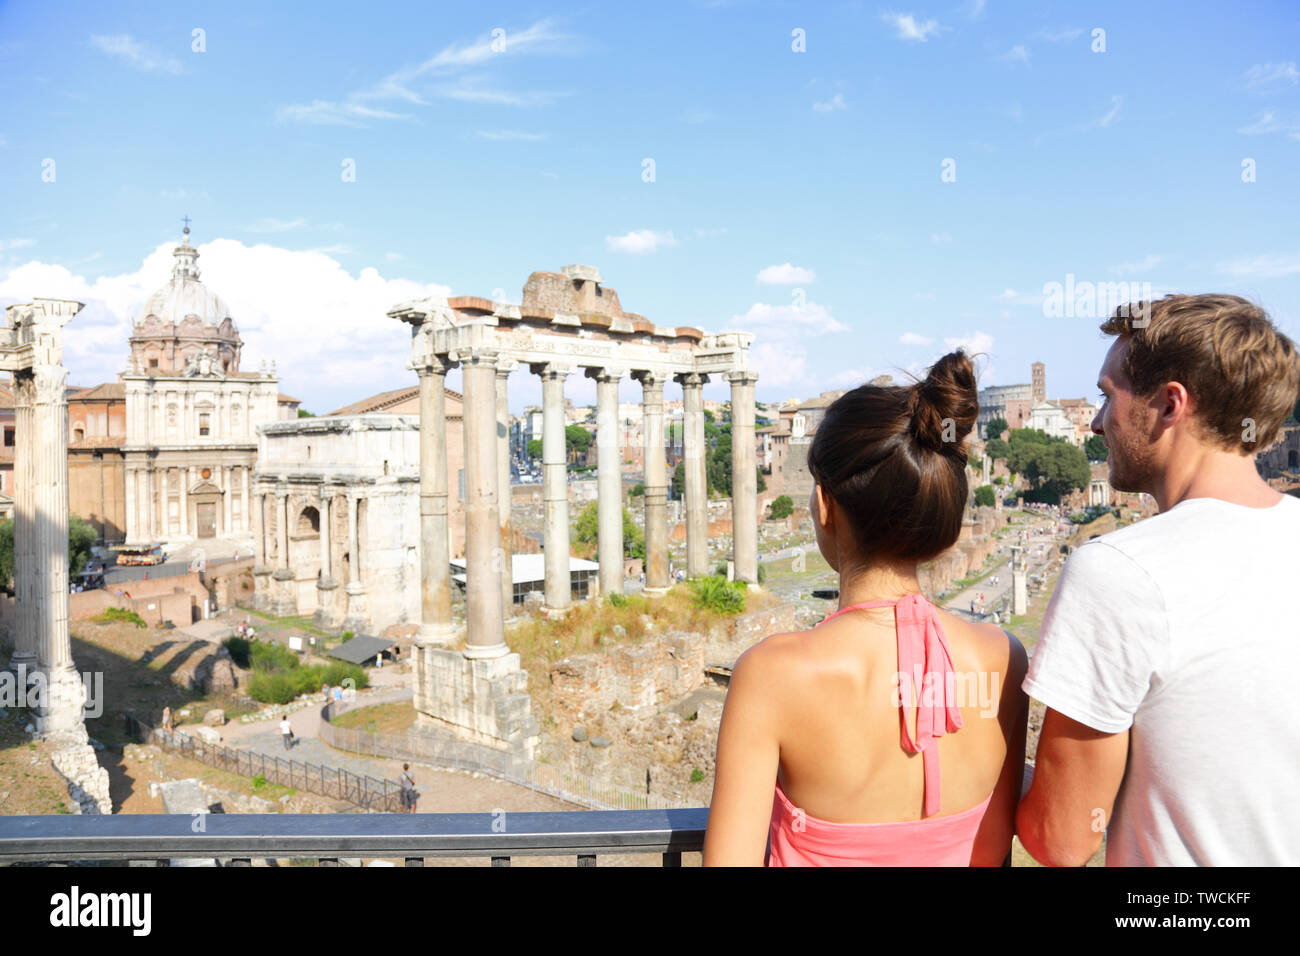 Forum Romanum Touristen auf der Suche nach Sehenswürdigkeiten in Rom Sightseeing auf Reisen Urlaub in Rom, Italien. Ihnen gerne touristische Paar, Mann und Frau, Reisen in Europa lächelte glücklich. Stockfoto